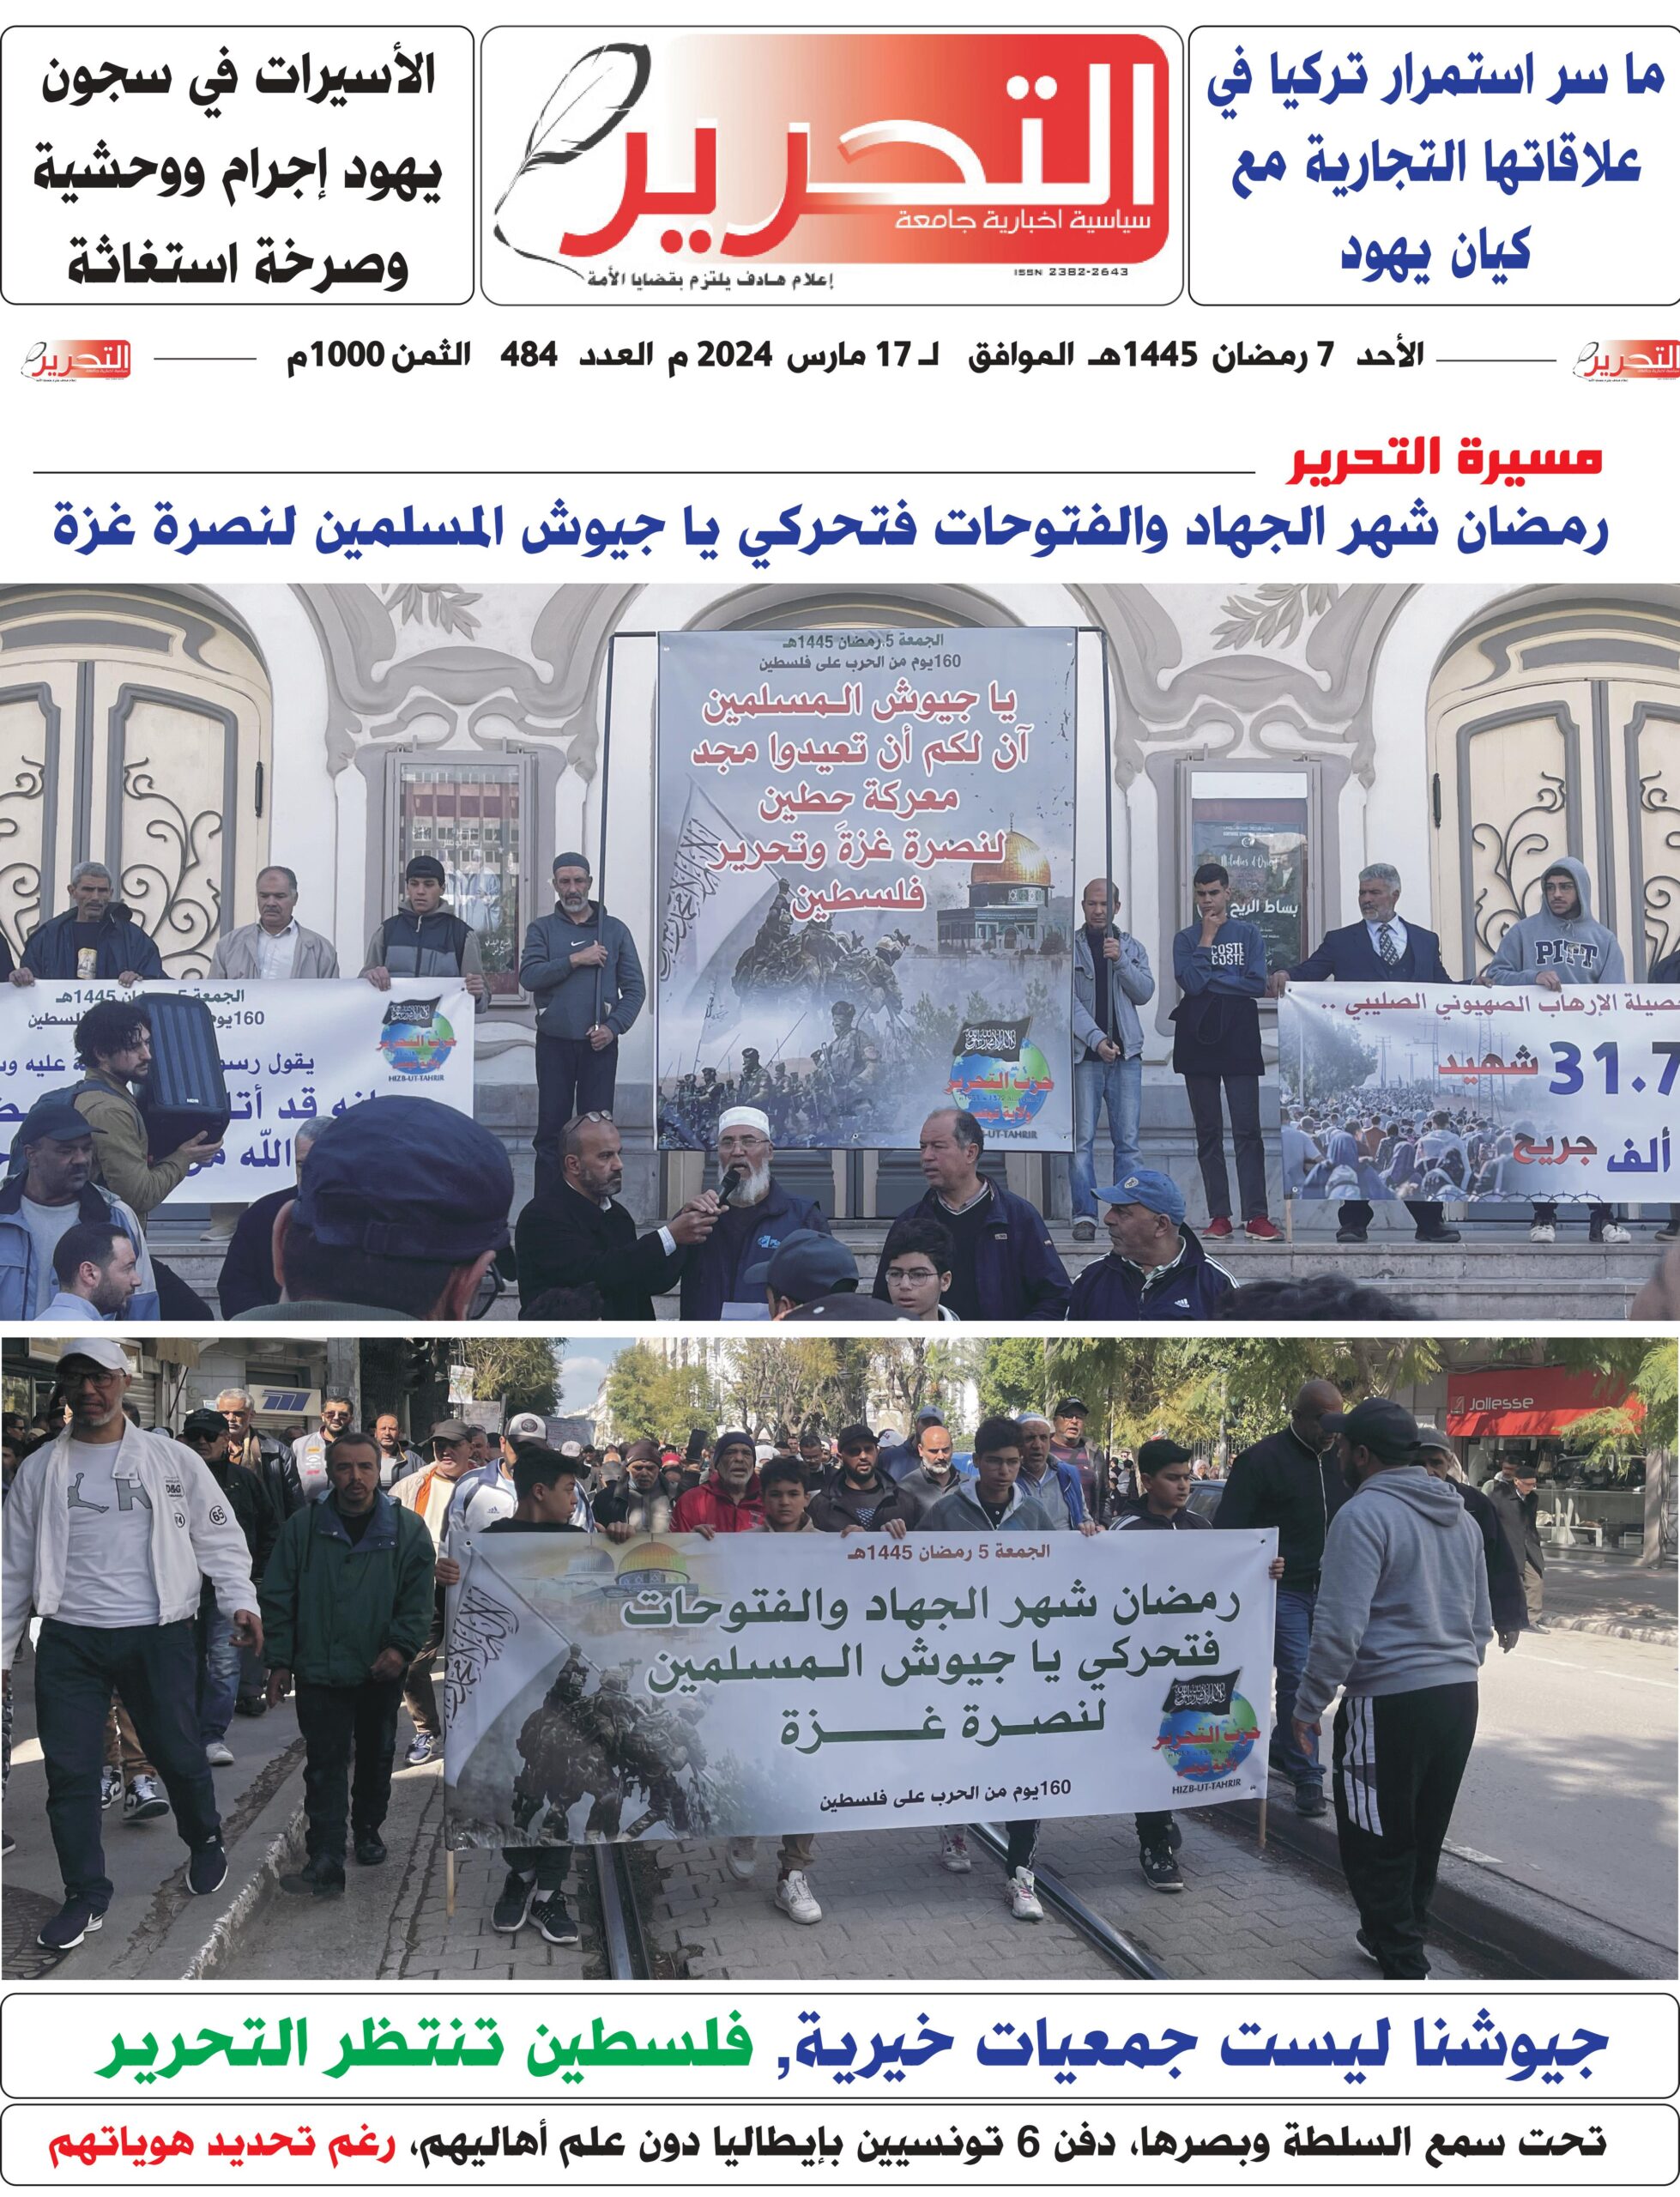 تنزيل العدد 484 من جريدة التحرير